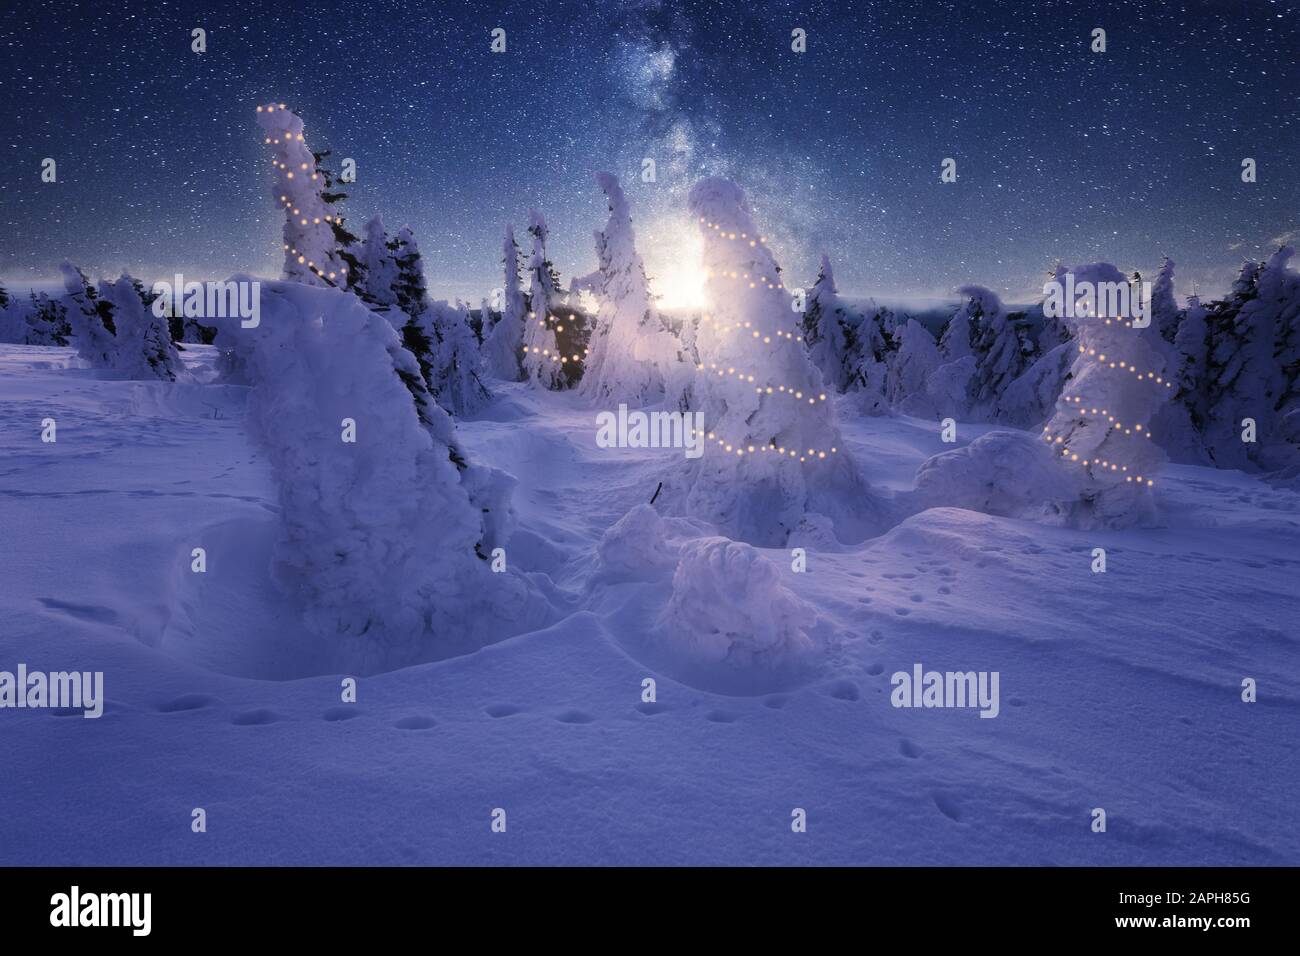 Paysage d'hiver avec des arbres neigeux et un ciel étoilé. Arbres avec lumières de fées Banque D'Images